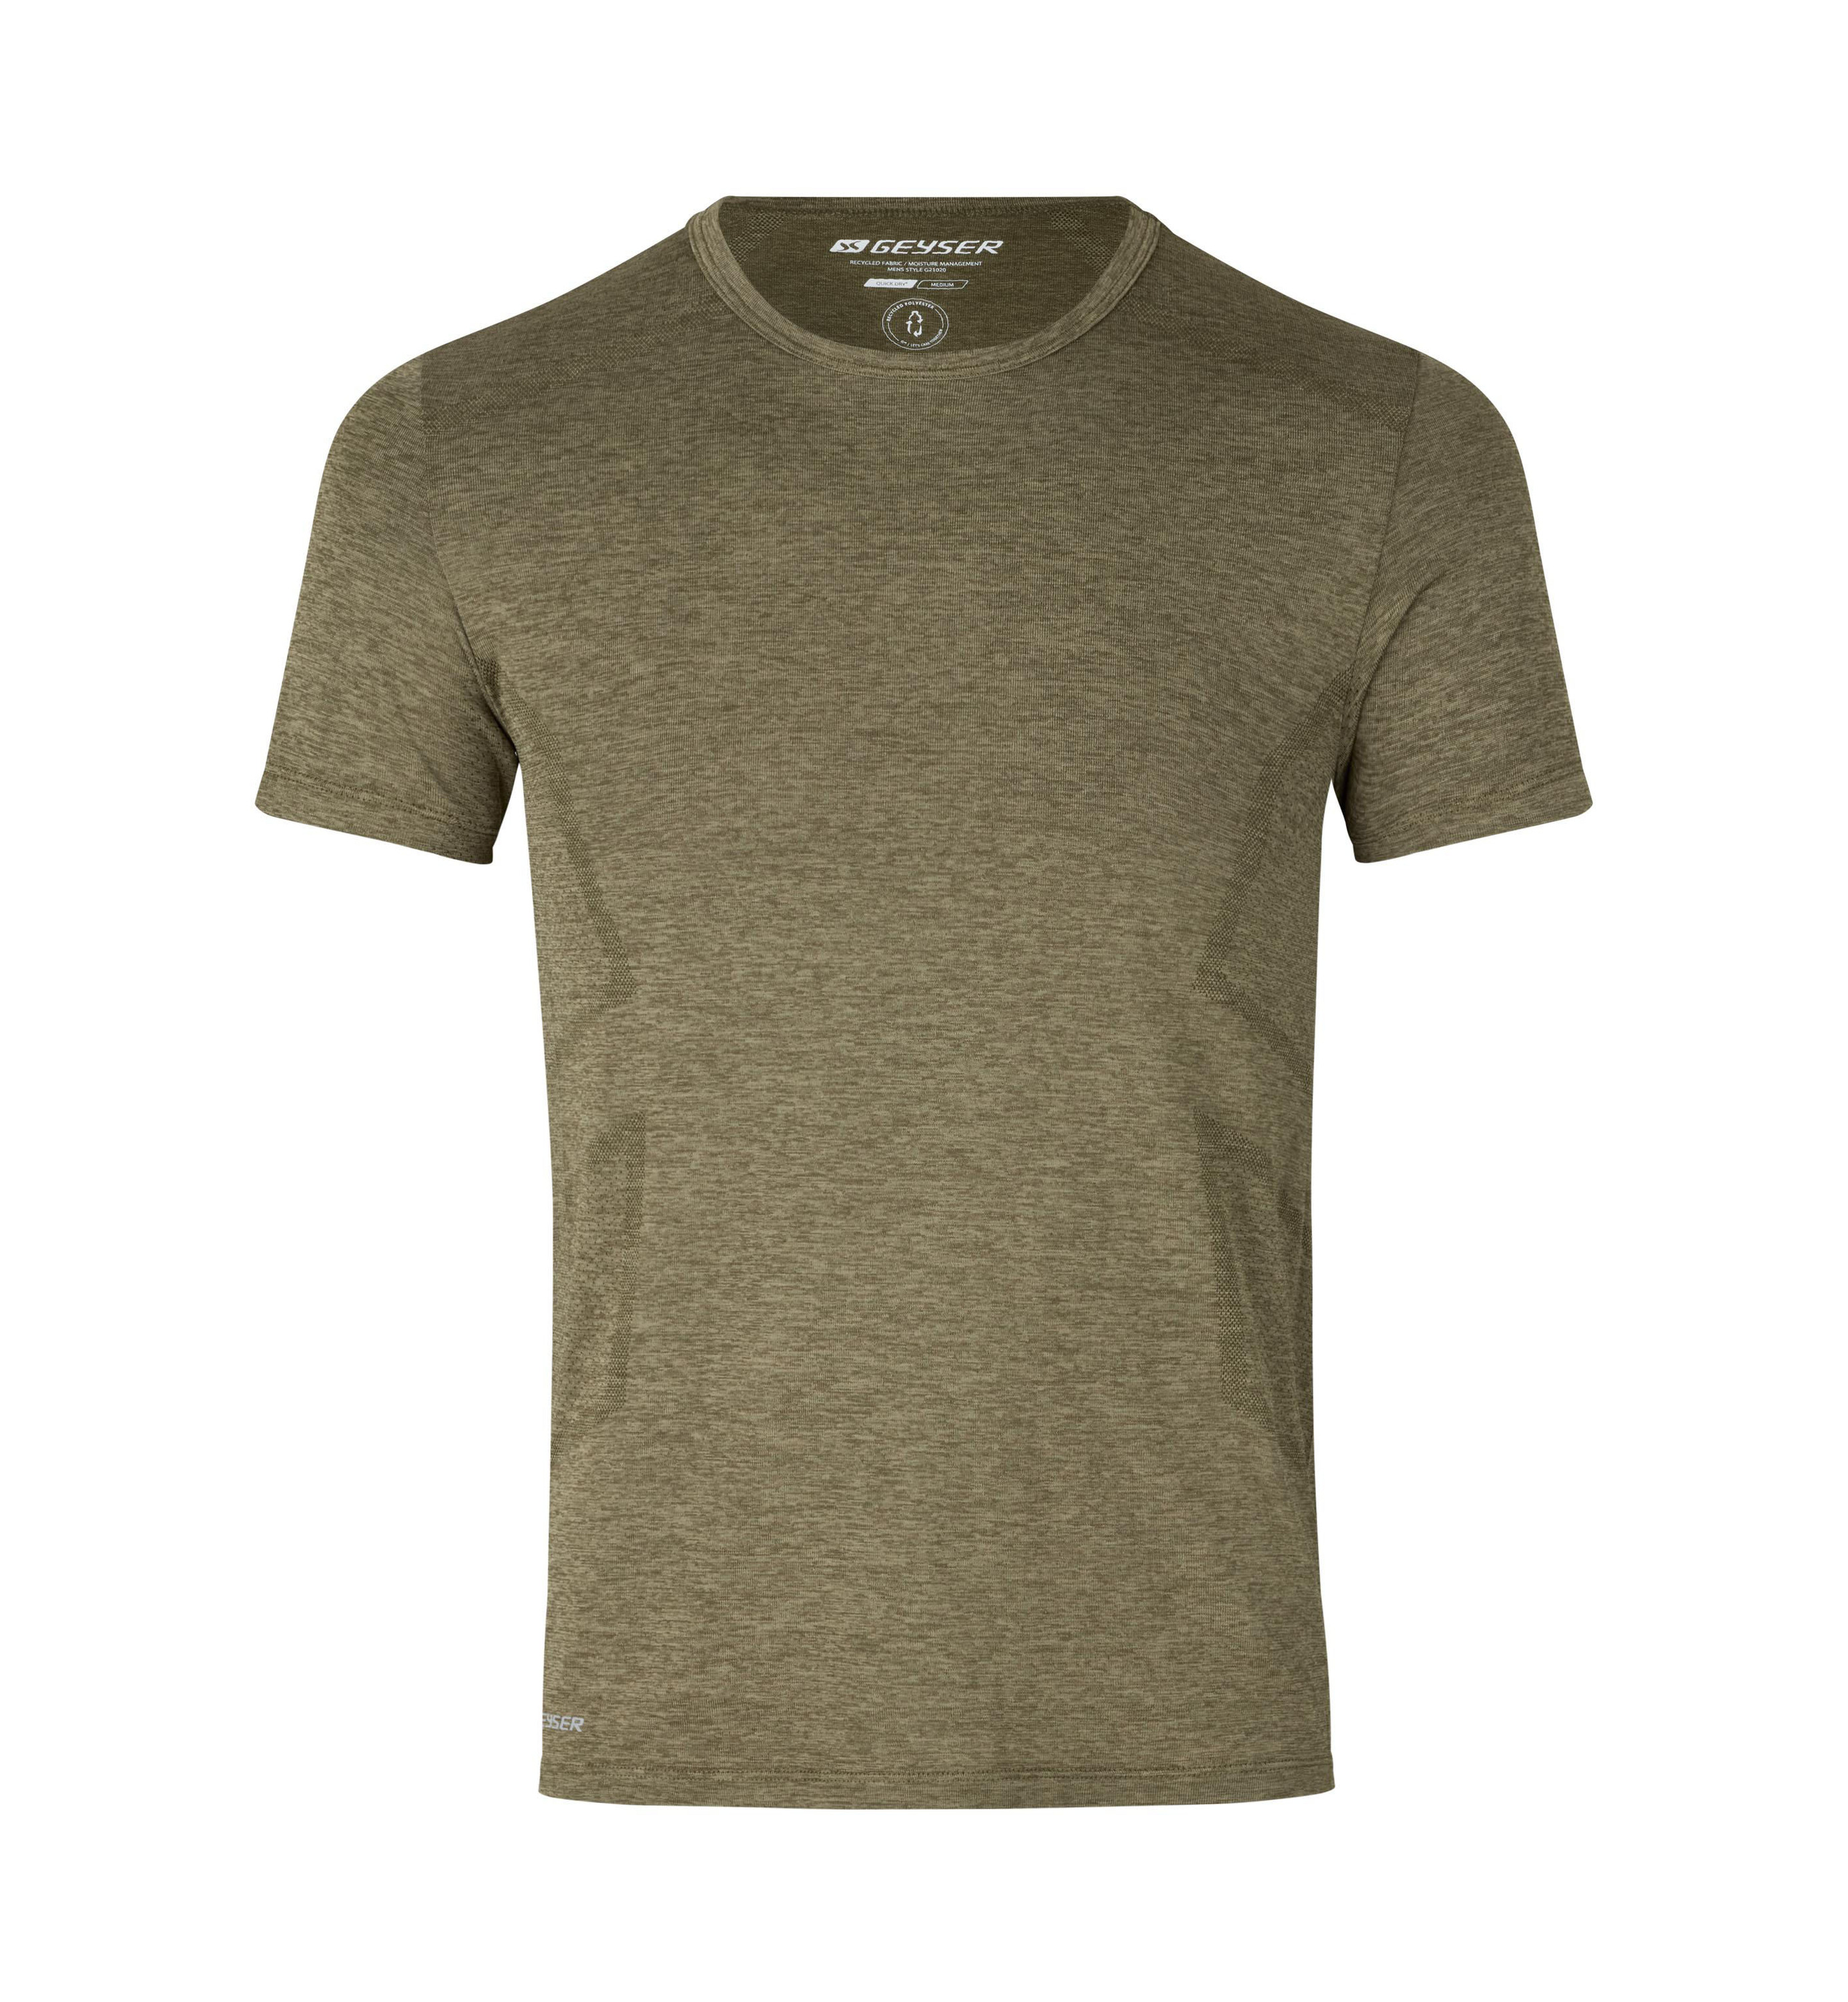 Рубашка GEYSER T Shirt seamless, цвет Oliv meliert